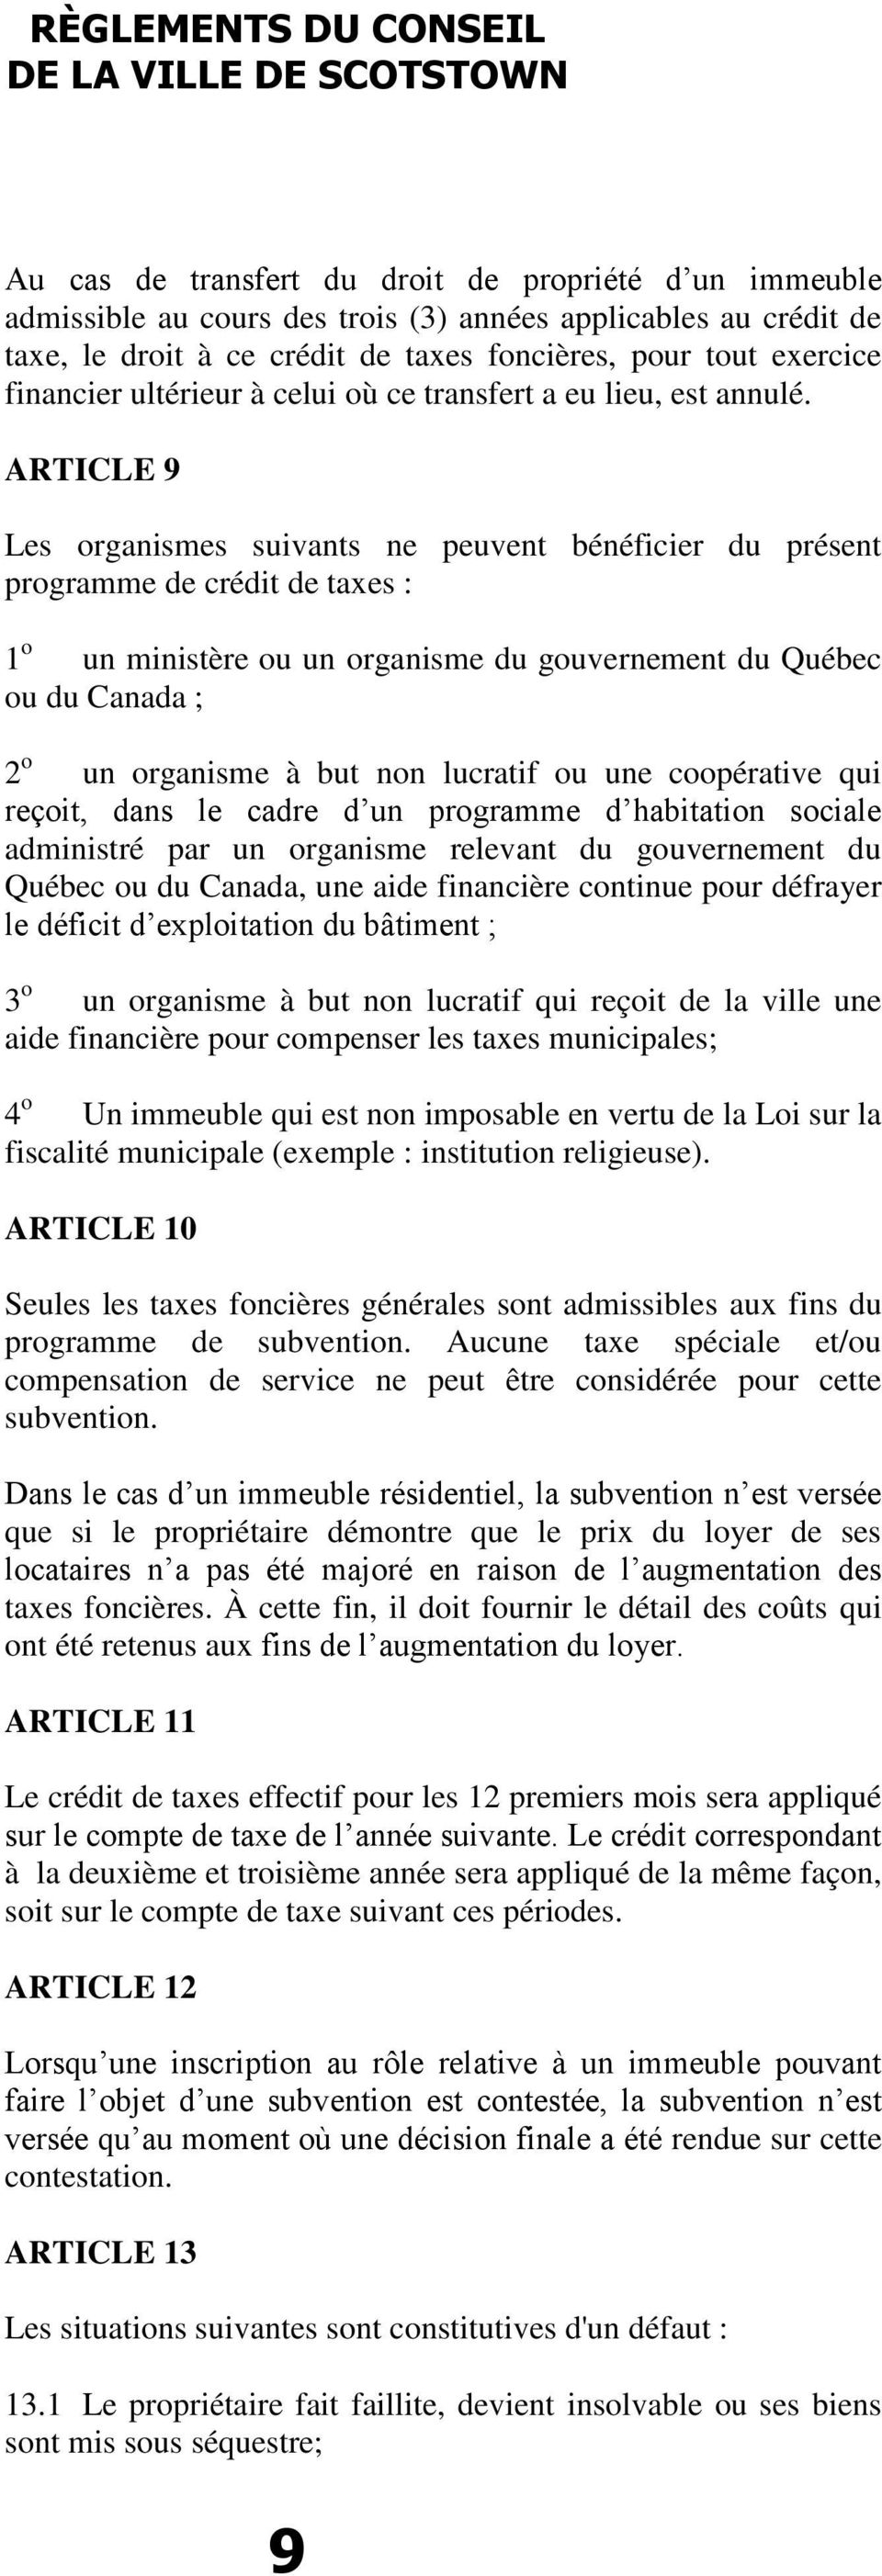 ARTICLE 9 Les organismes suivants ne peuvent bénéficier du présent programme de crédit de taxes : 1 o un ministère ou un organisme du gouvernement du Québec ou du Canada ; 2 o un organisme à but non